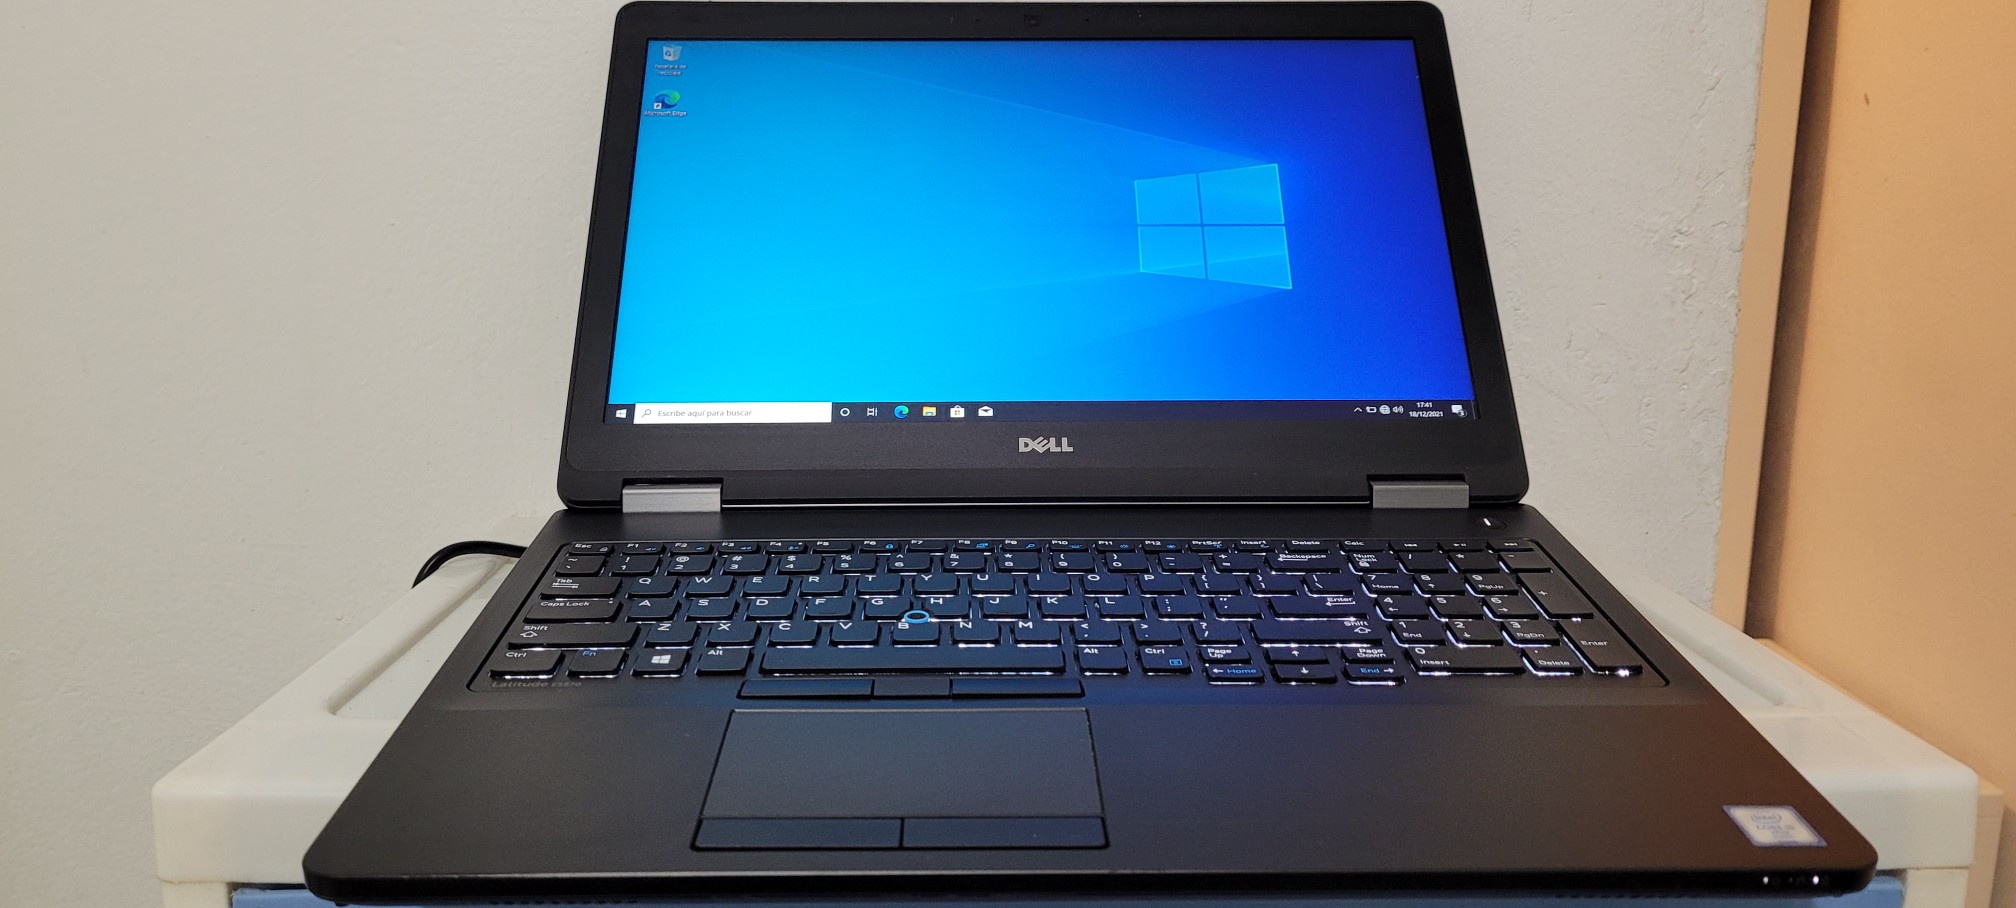 computadoras y laptops - Dell latitude 17 Pulg Core i7 Ram 8gb Disco 1000gb Teclado numerico 0